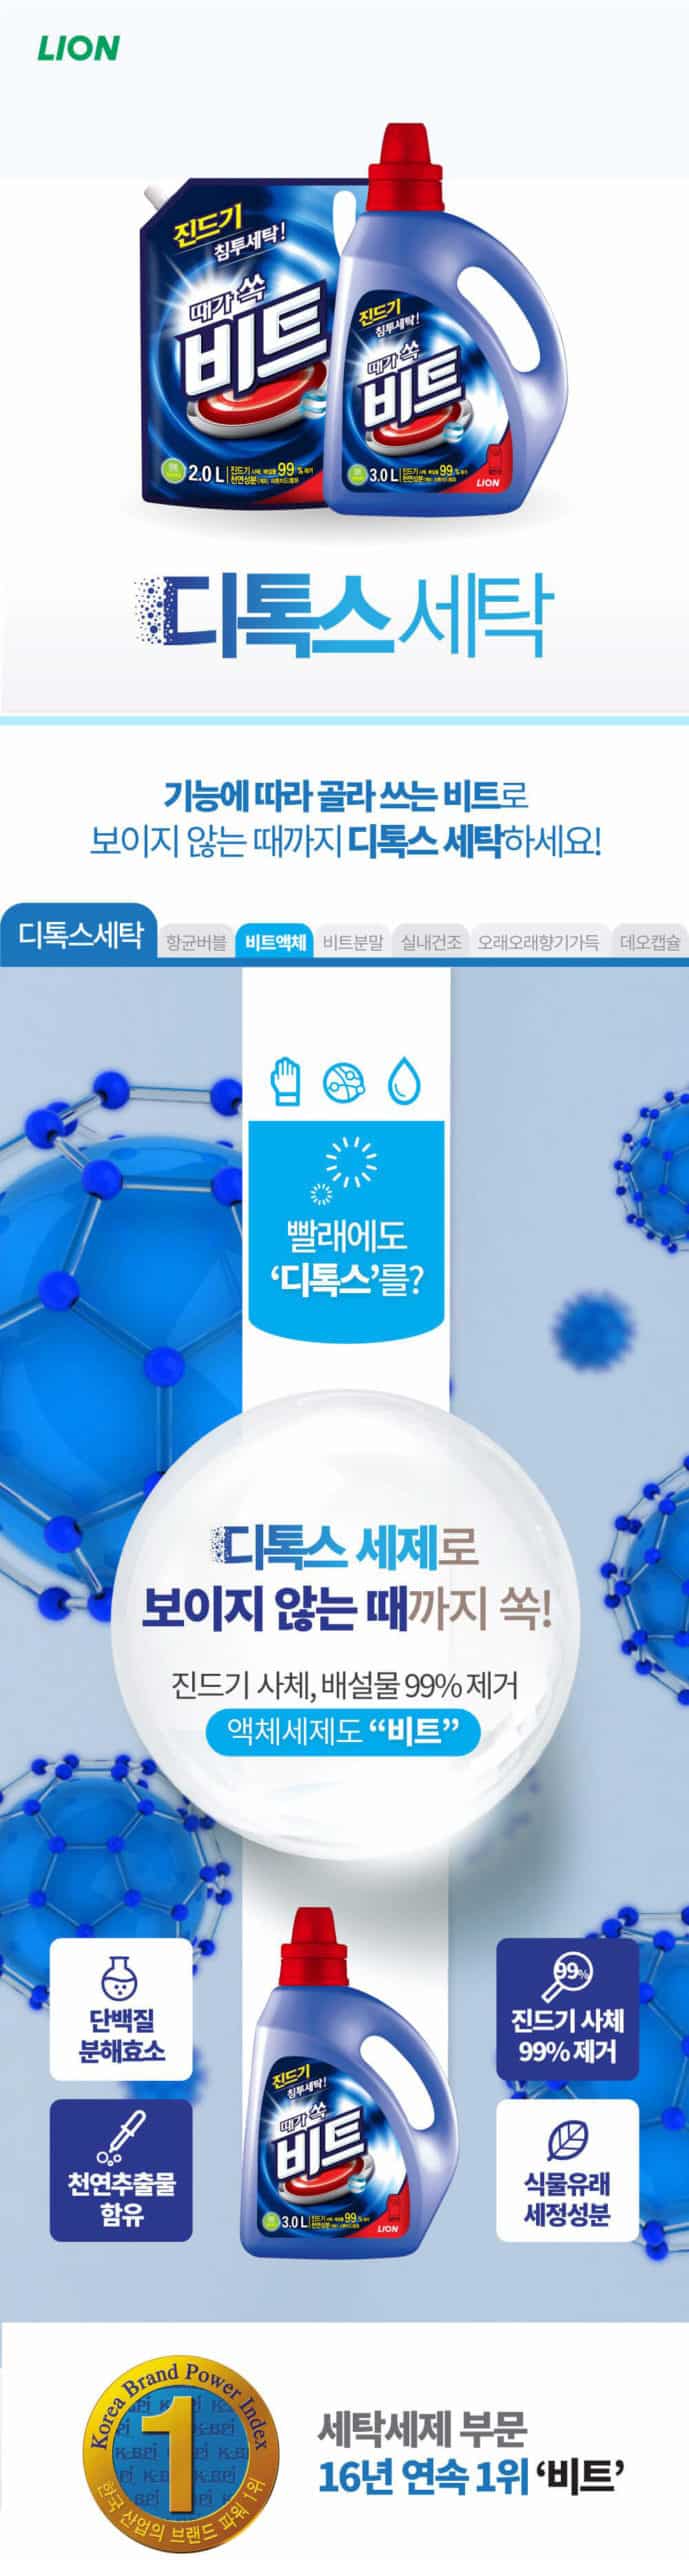 韓國食品-[LG생활건강] 비트, 액체진드기 (리필,드럼용) 2L